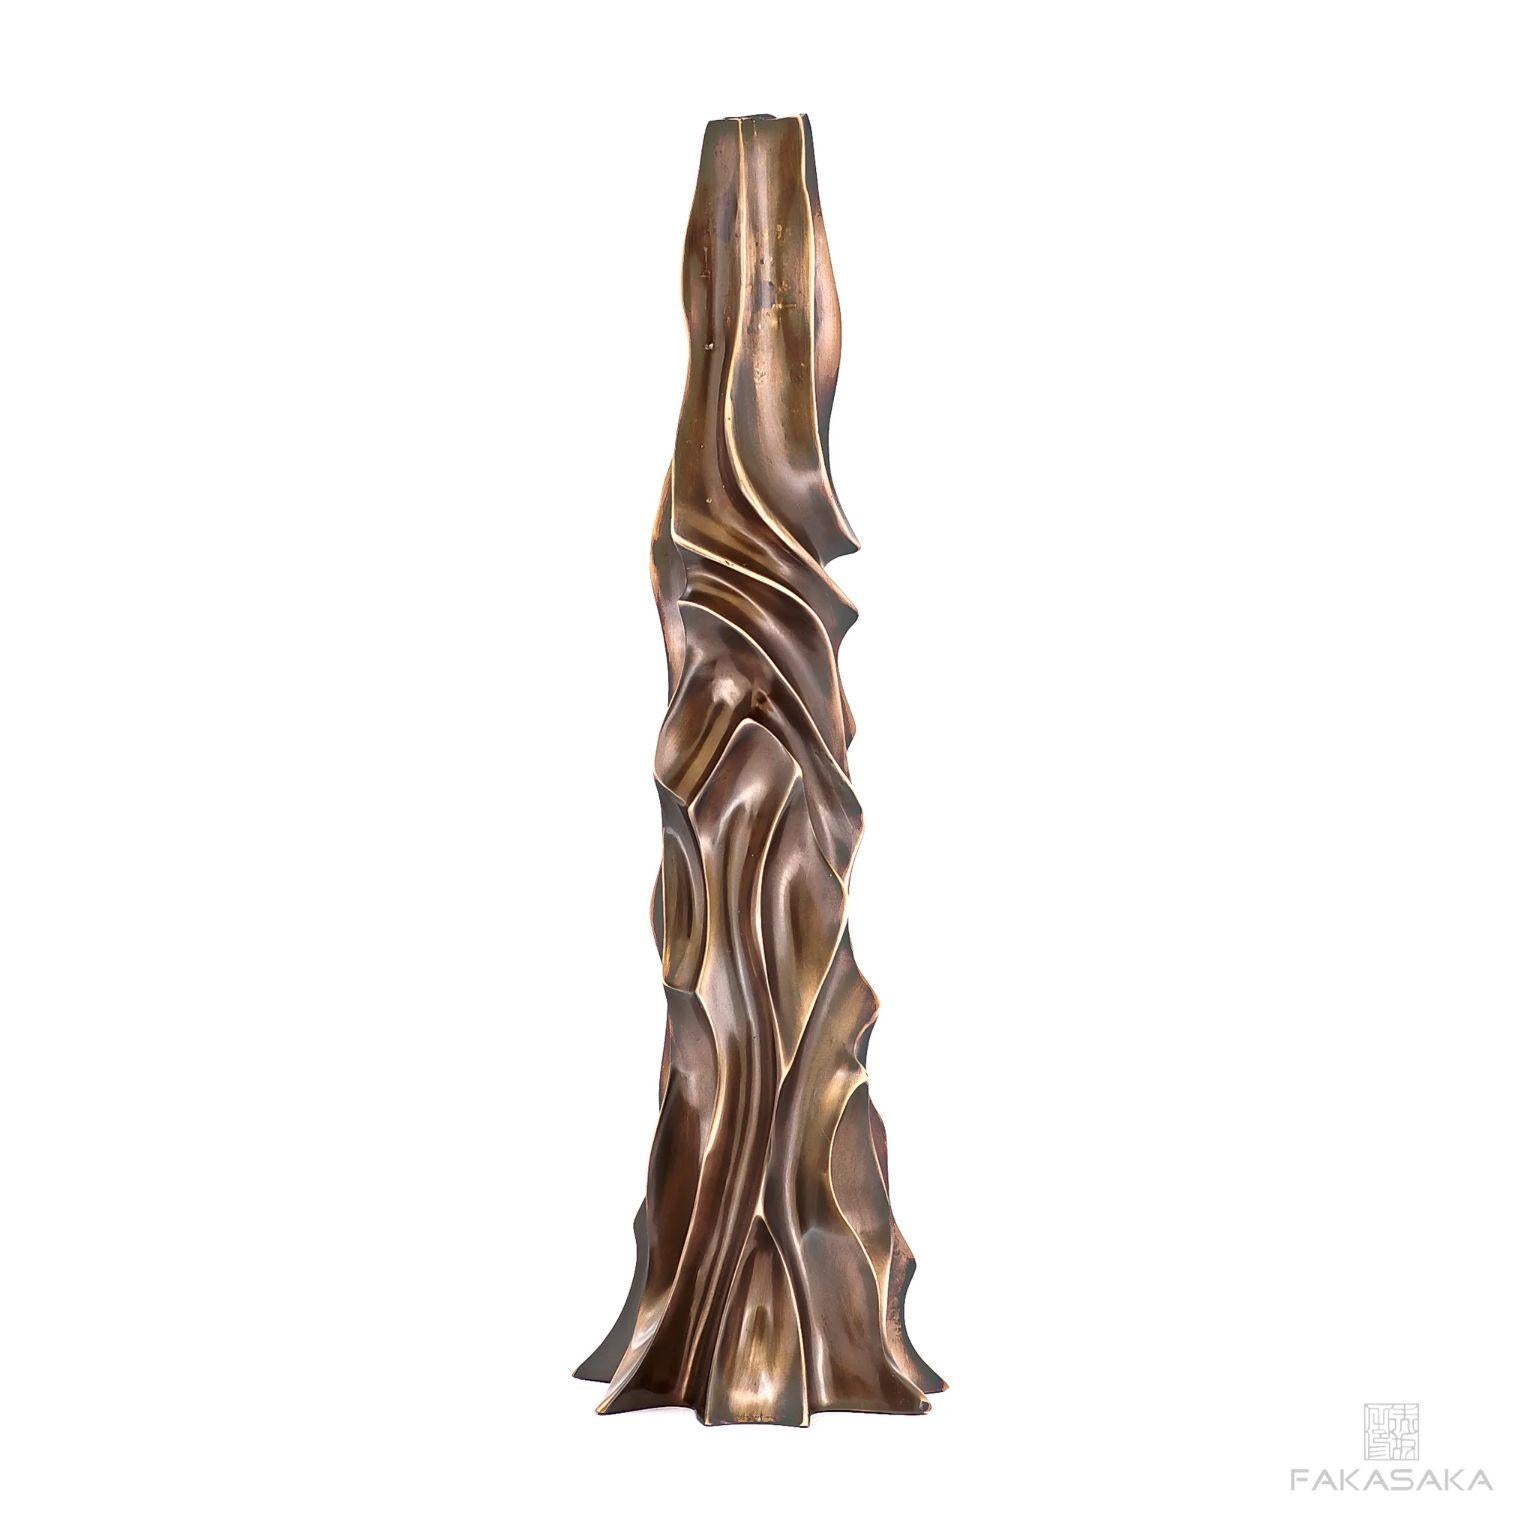 Apfel-Kerzenhalter von Fakasaka design
Abmessungen: B 13,5 cm T 13,5 cm H 41,5.
MATERIAL: dunkle Bronze.
Auch in polierter Bronze erhältlich. 

 Fakasaka ist ein Designunternehmen, das sich auf die Herstellung von hochwertigen Möbeln, Leuchten,